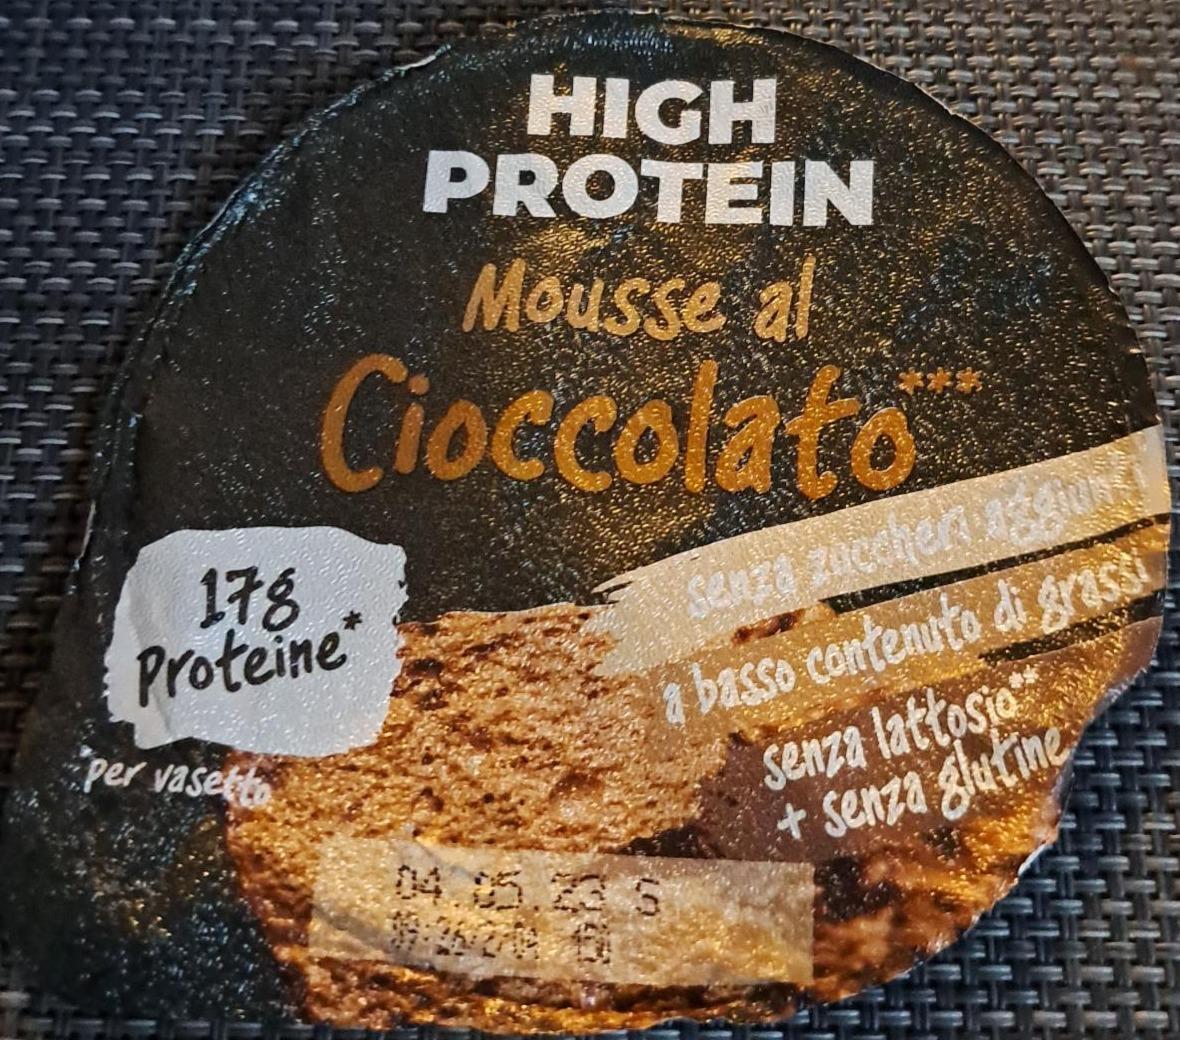 Fotografie - High protein Mousse al Cioccolato Milchfrisch